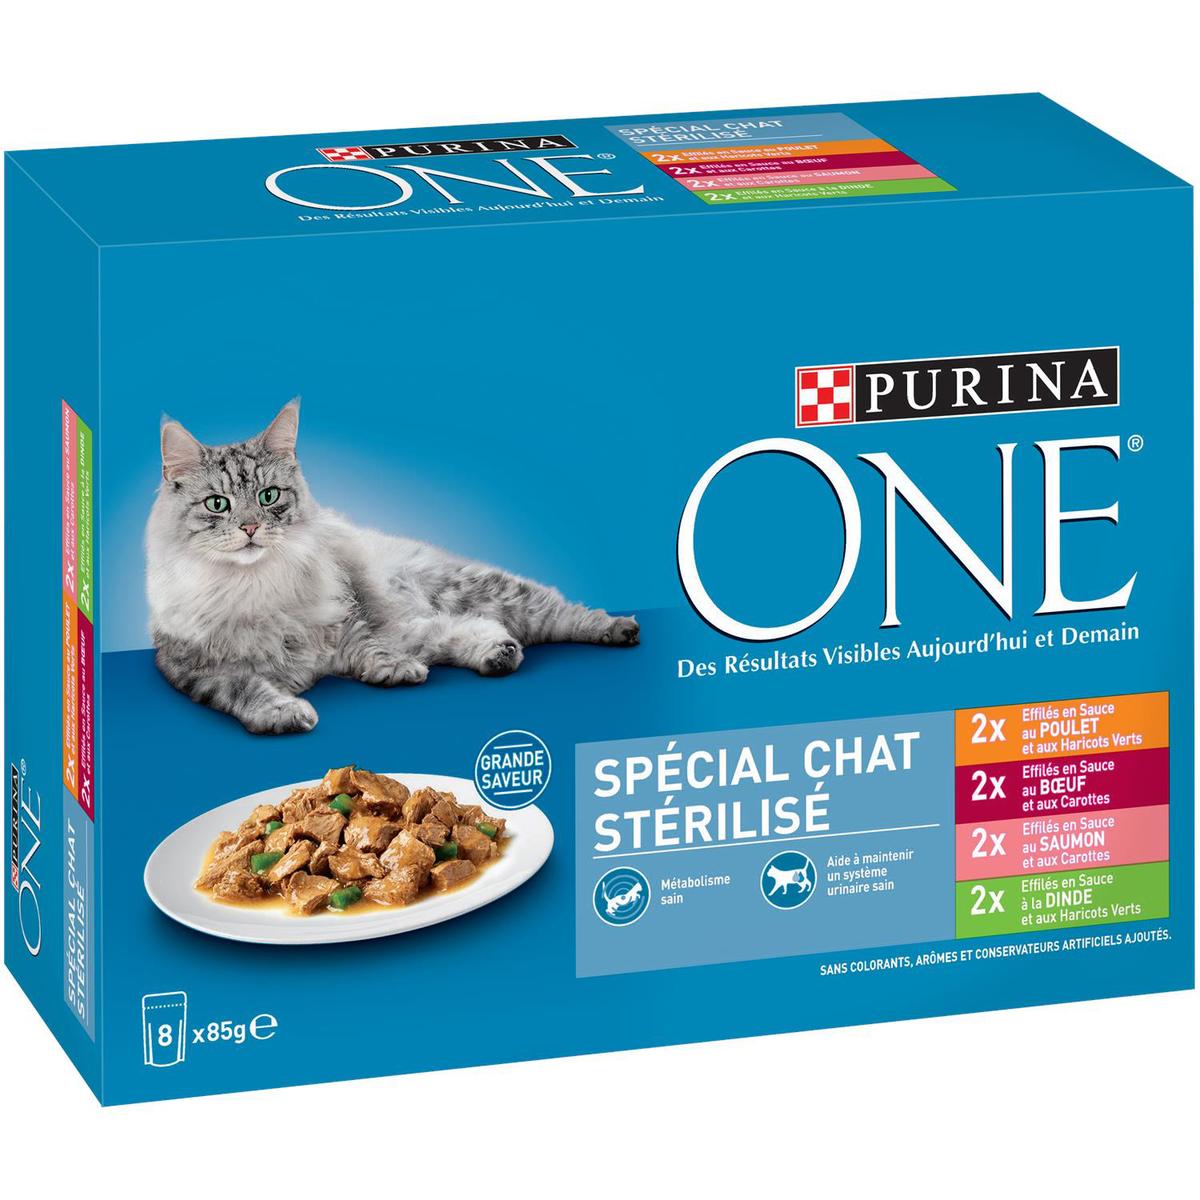 Acheter Purina One Effilés en sauce spécial chat stérilisé, 8x85g